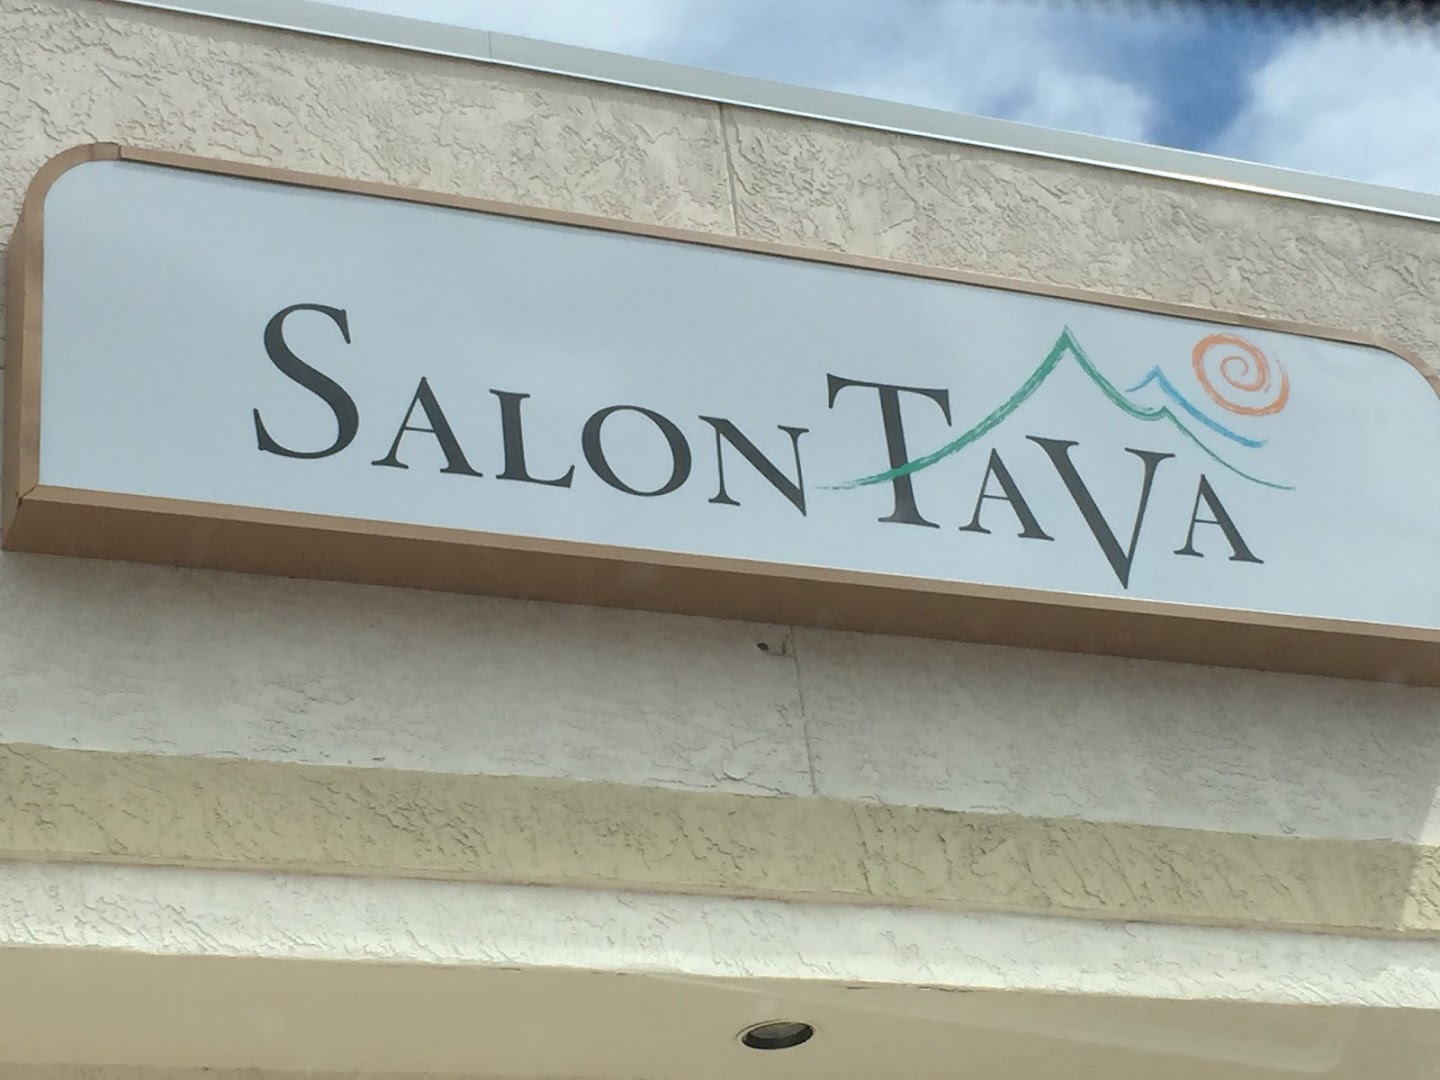 Salon Tava